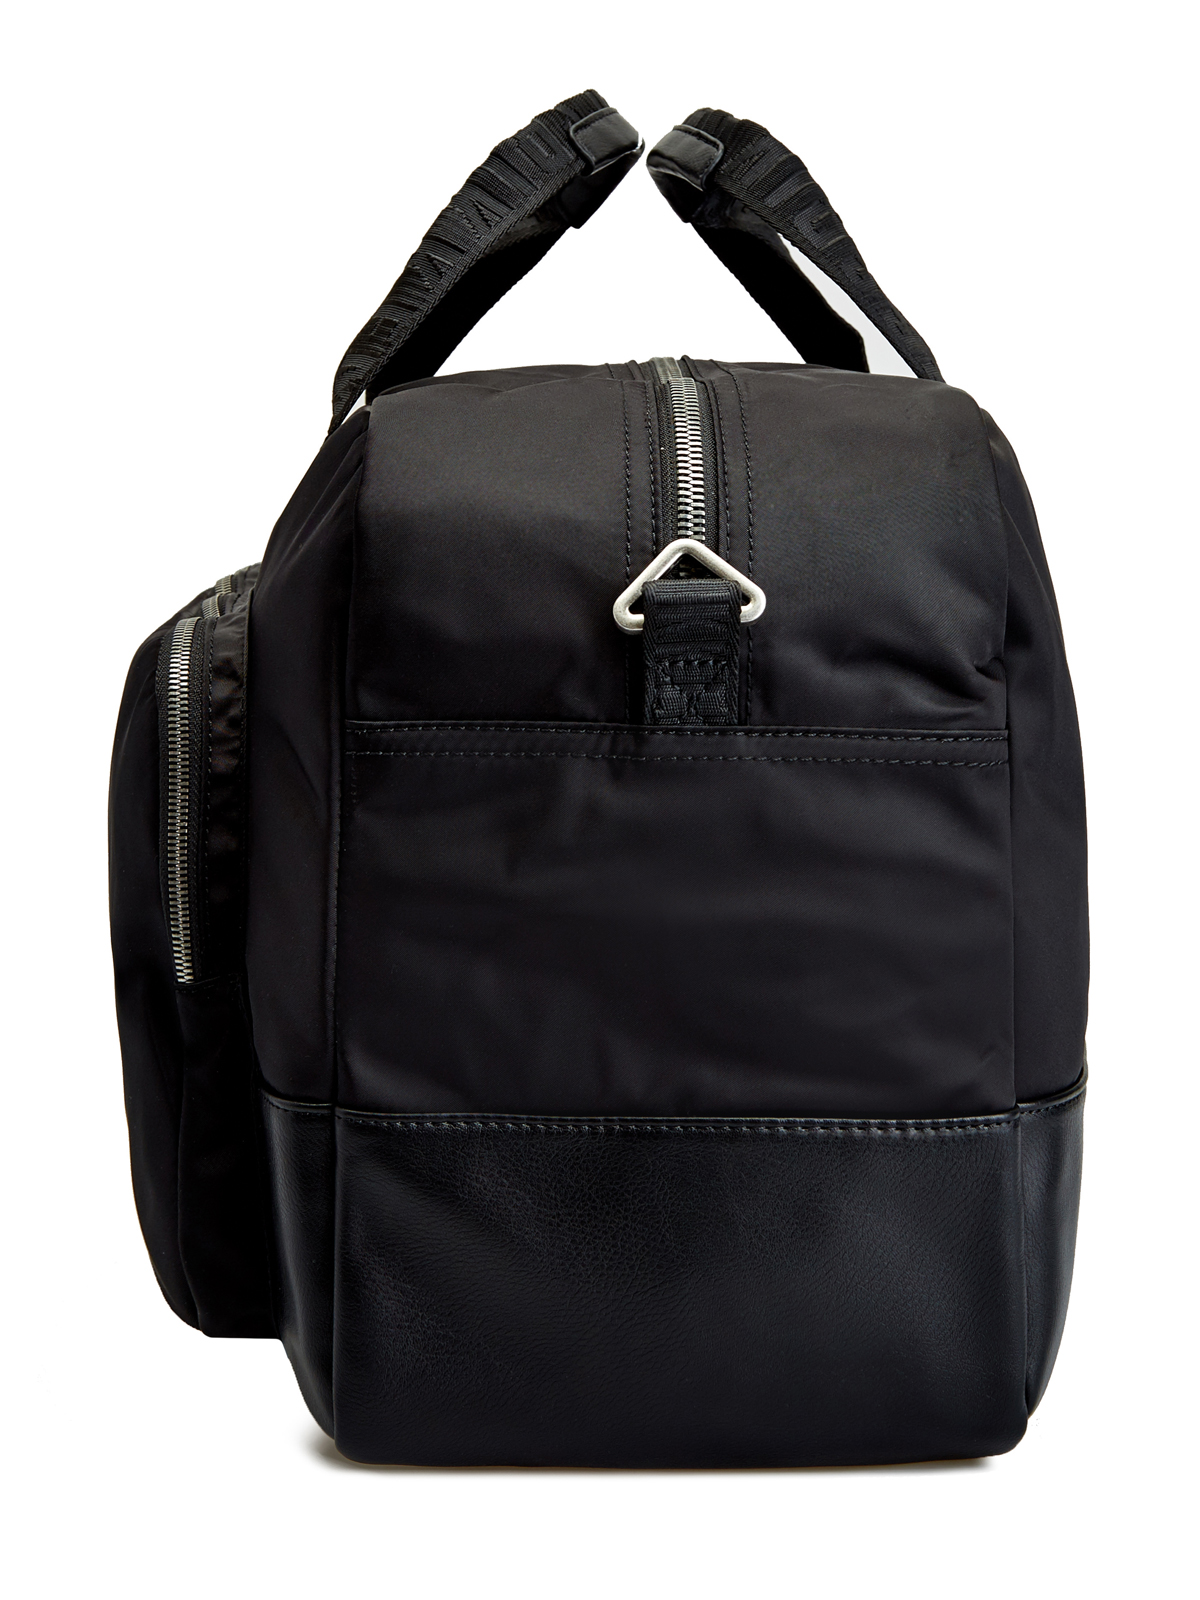 Дорожная сумка Next 3.0 в спортивном стиле BIKKEMBERGS, цвет черный, размер M - фото 4